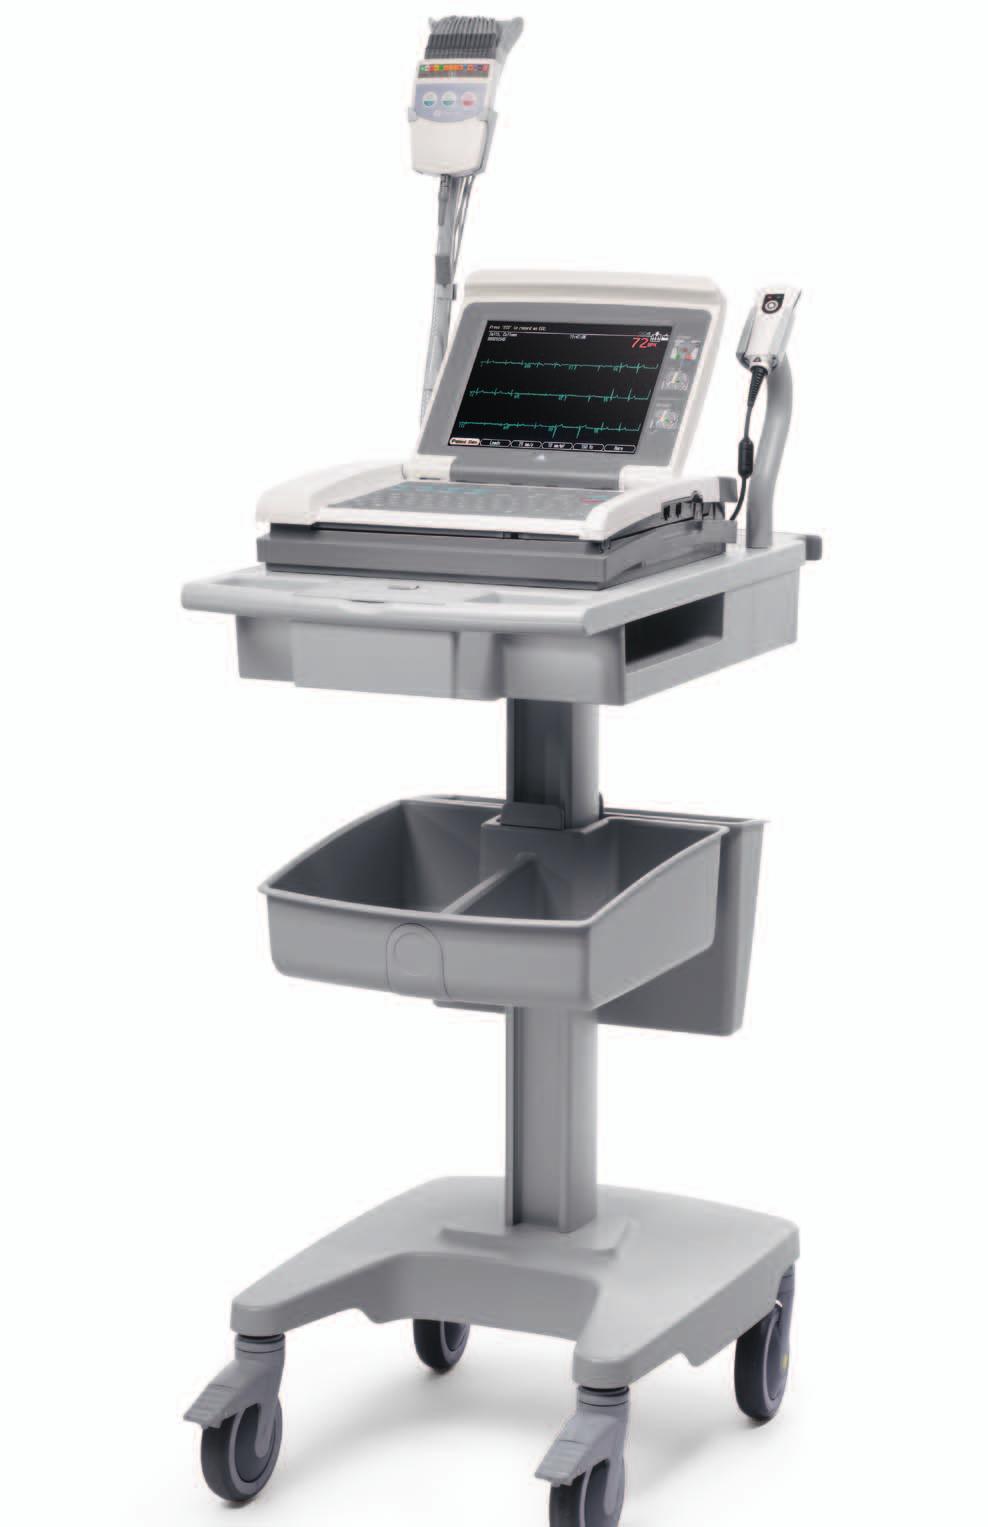 Hochwertiges Design und Innovation für erweiterte Einsatzmöglichkeiten Das MAC 5500 HD-System wurde speziell zur Verbesserung der Produktivität von klinischem Personal entwickelt.